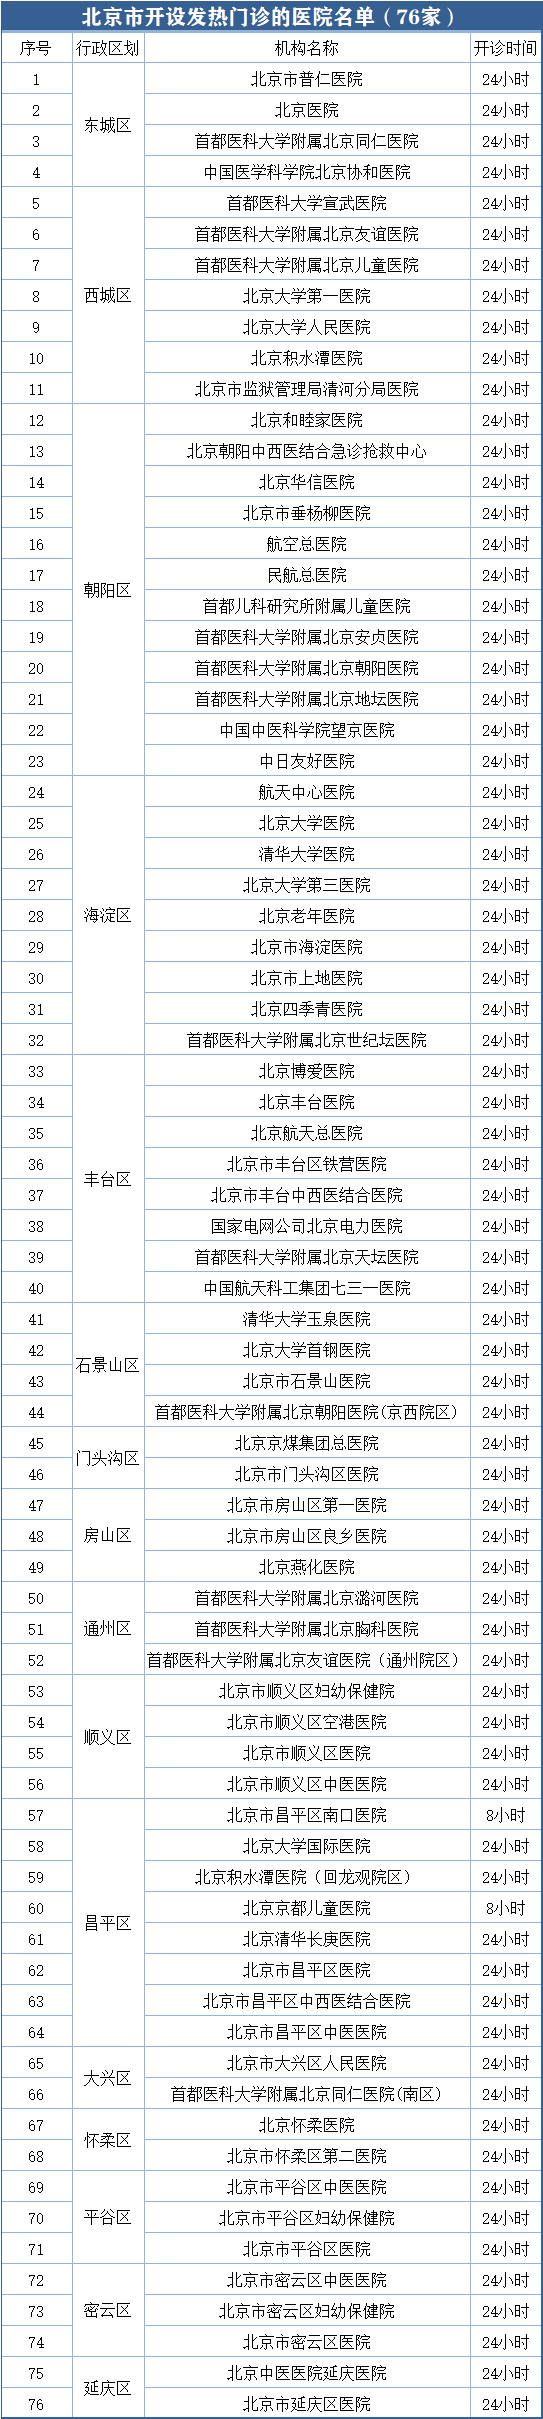 北京市开设发热门诊医院数调至76所 详细名单来了